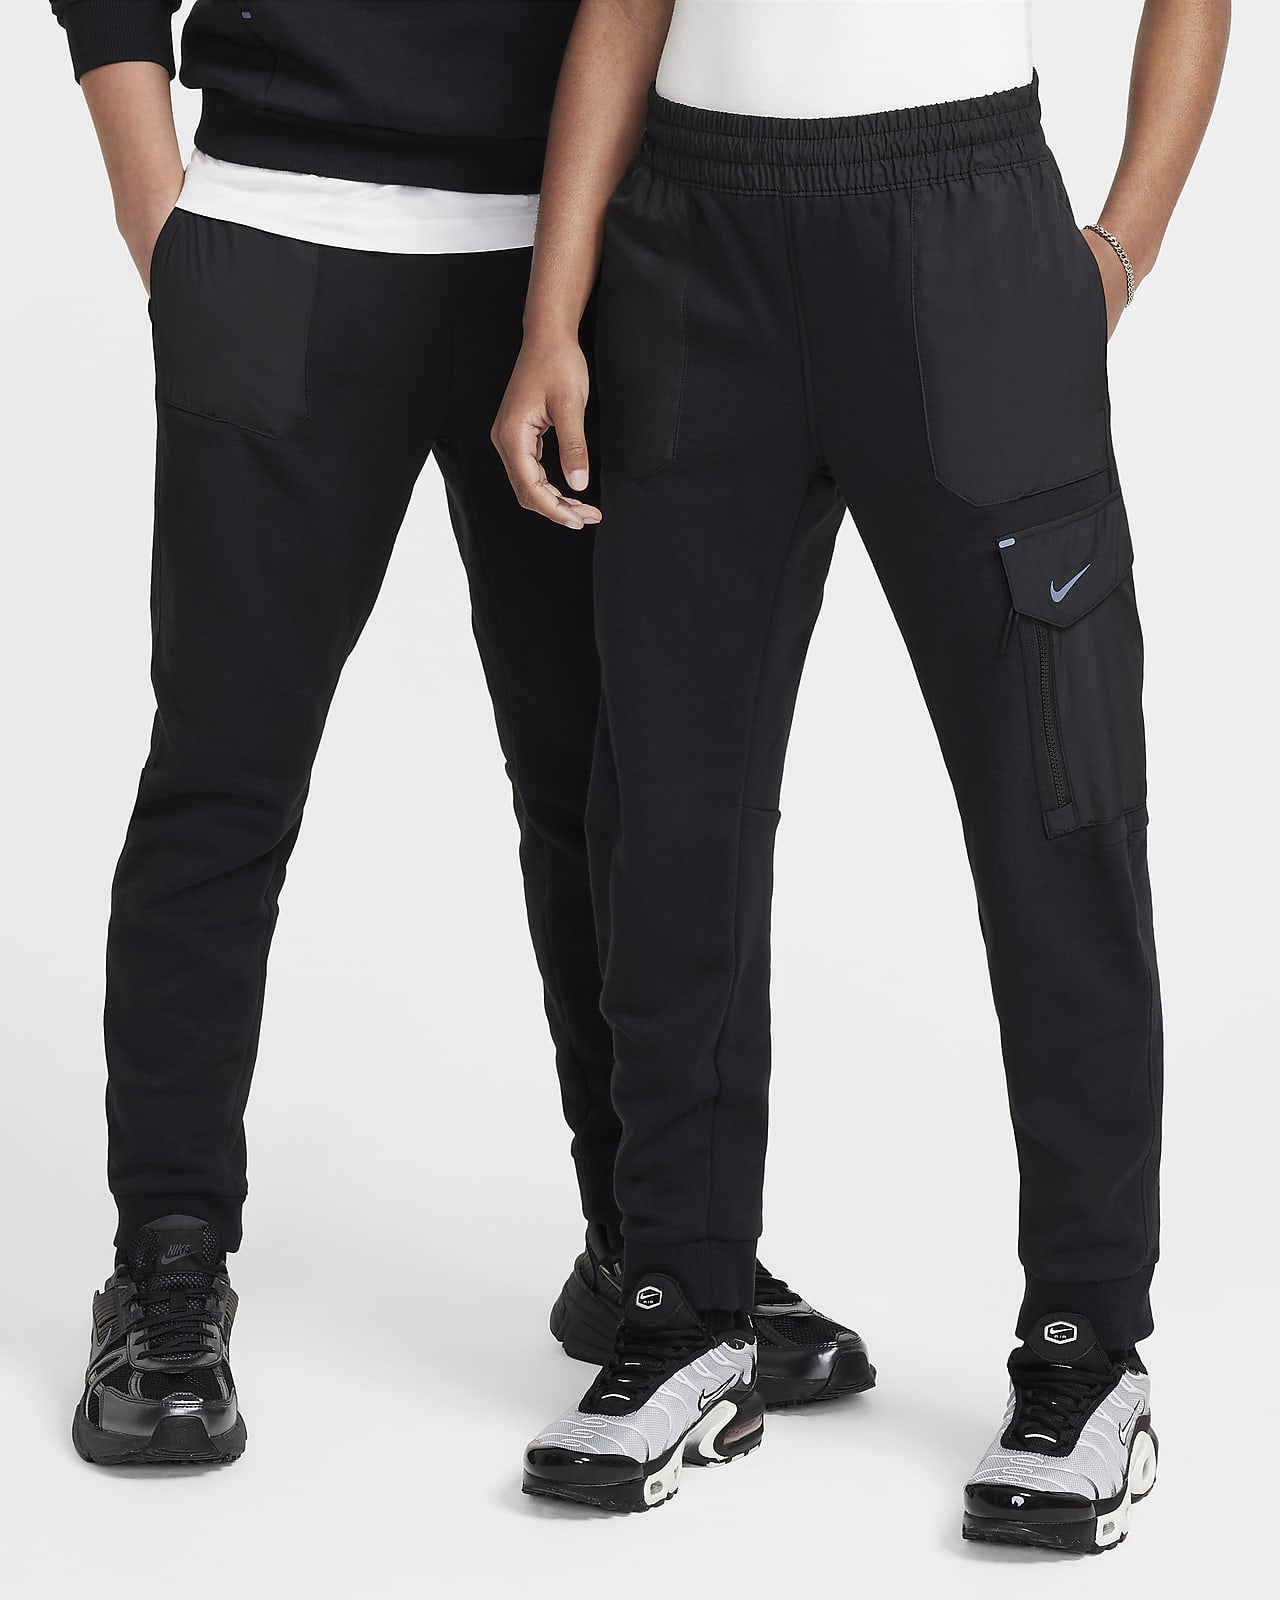 Pantalon en tissu Fleece Nike Sportswear City Utility EasyOn pour ado